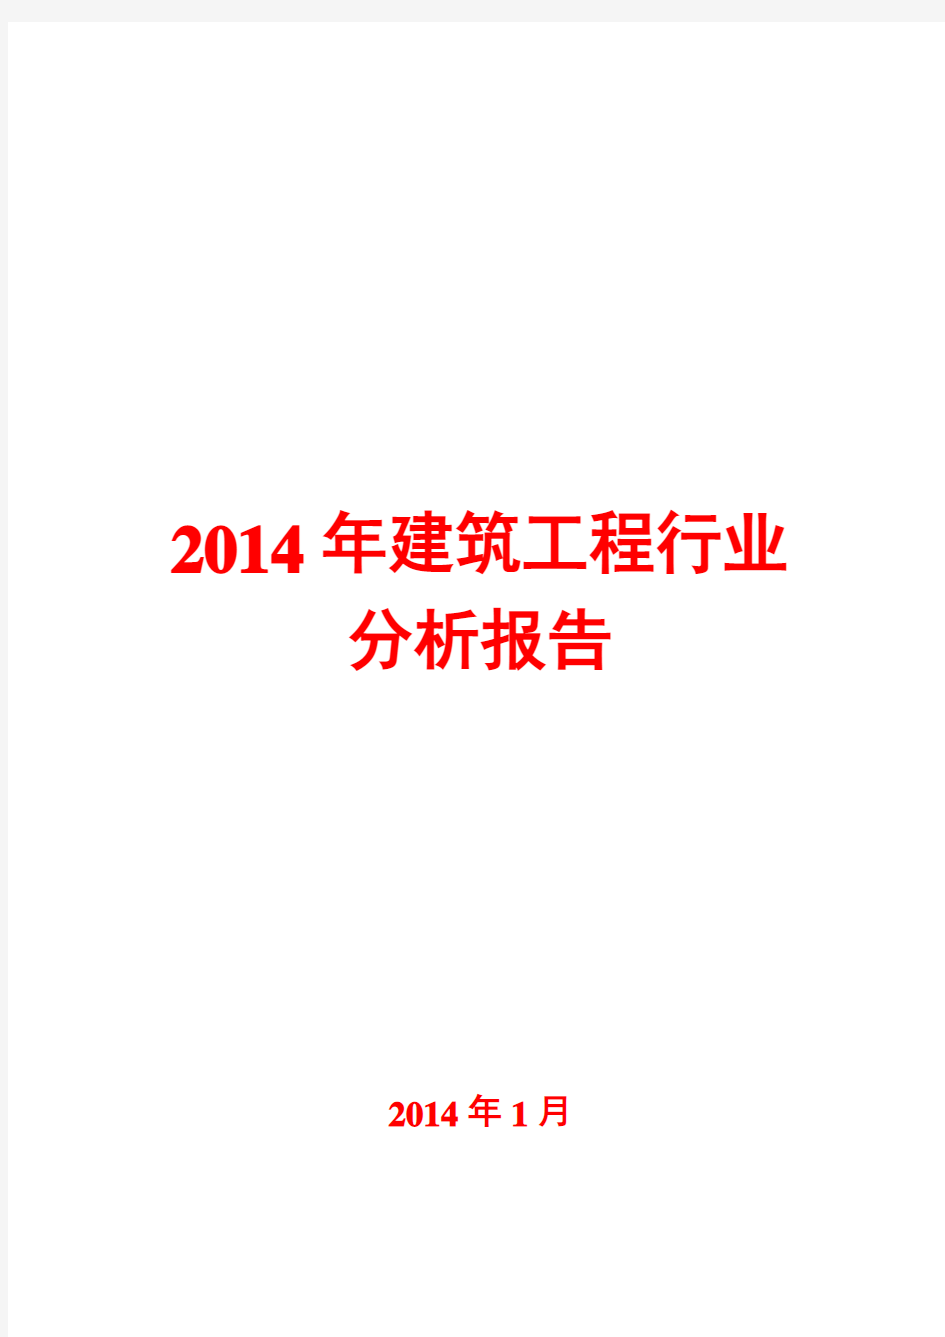 2014年建筑工程行业分析报告